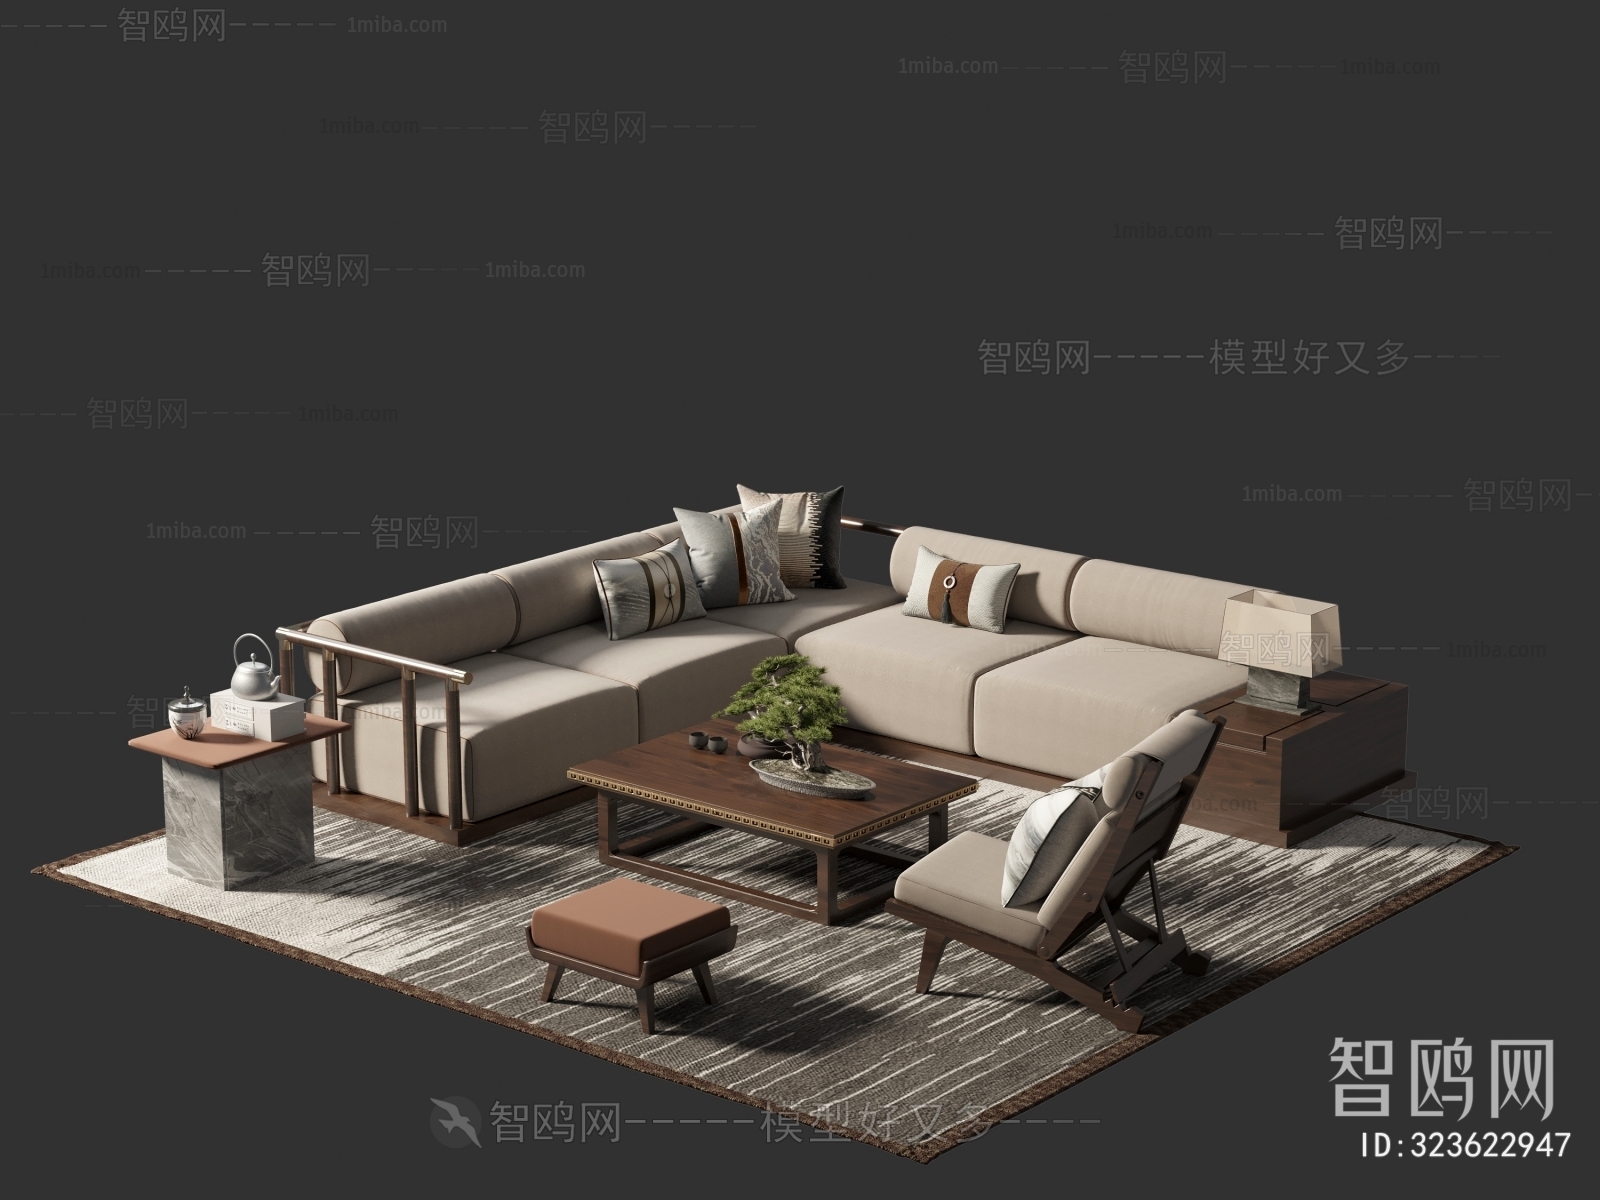 New Chinese Style Corner Sofa